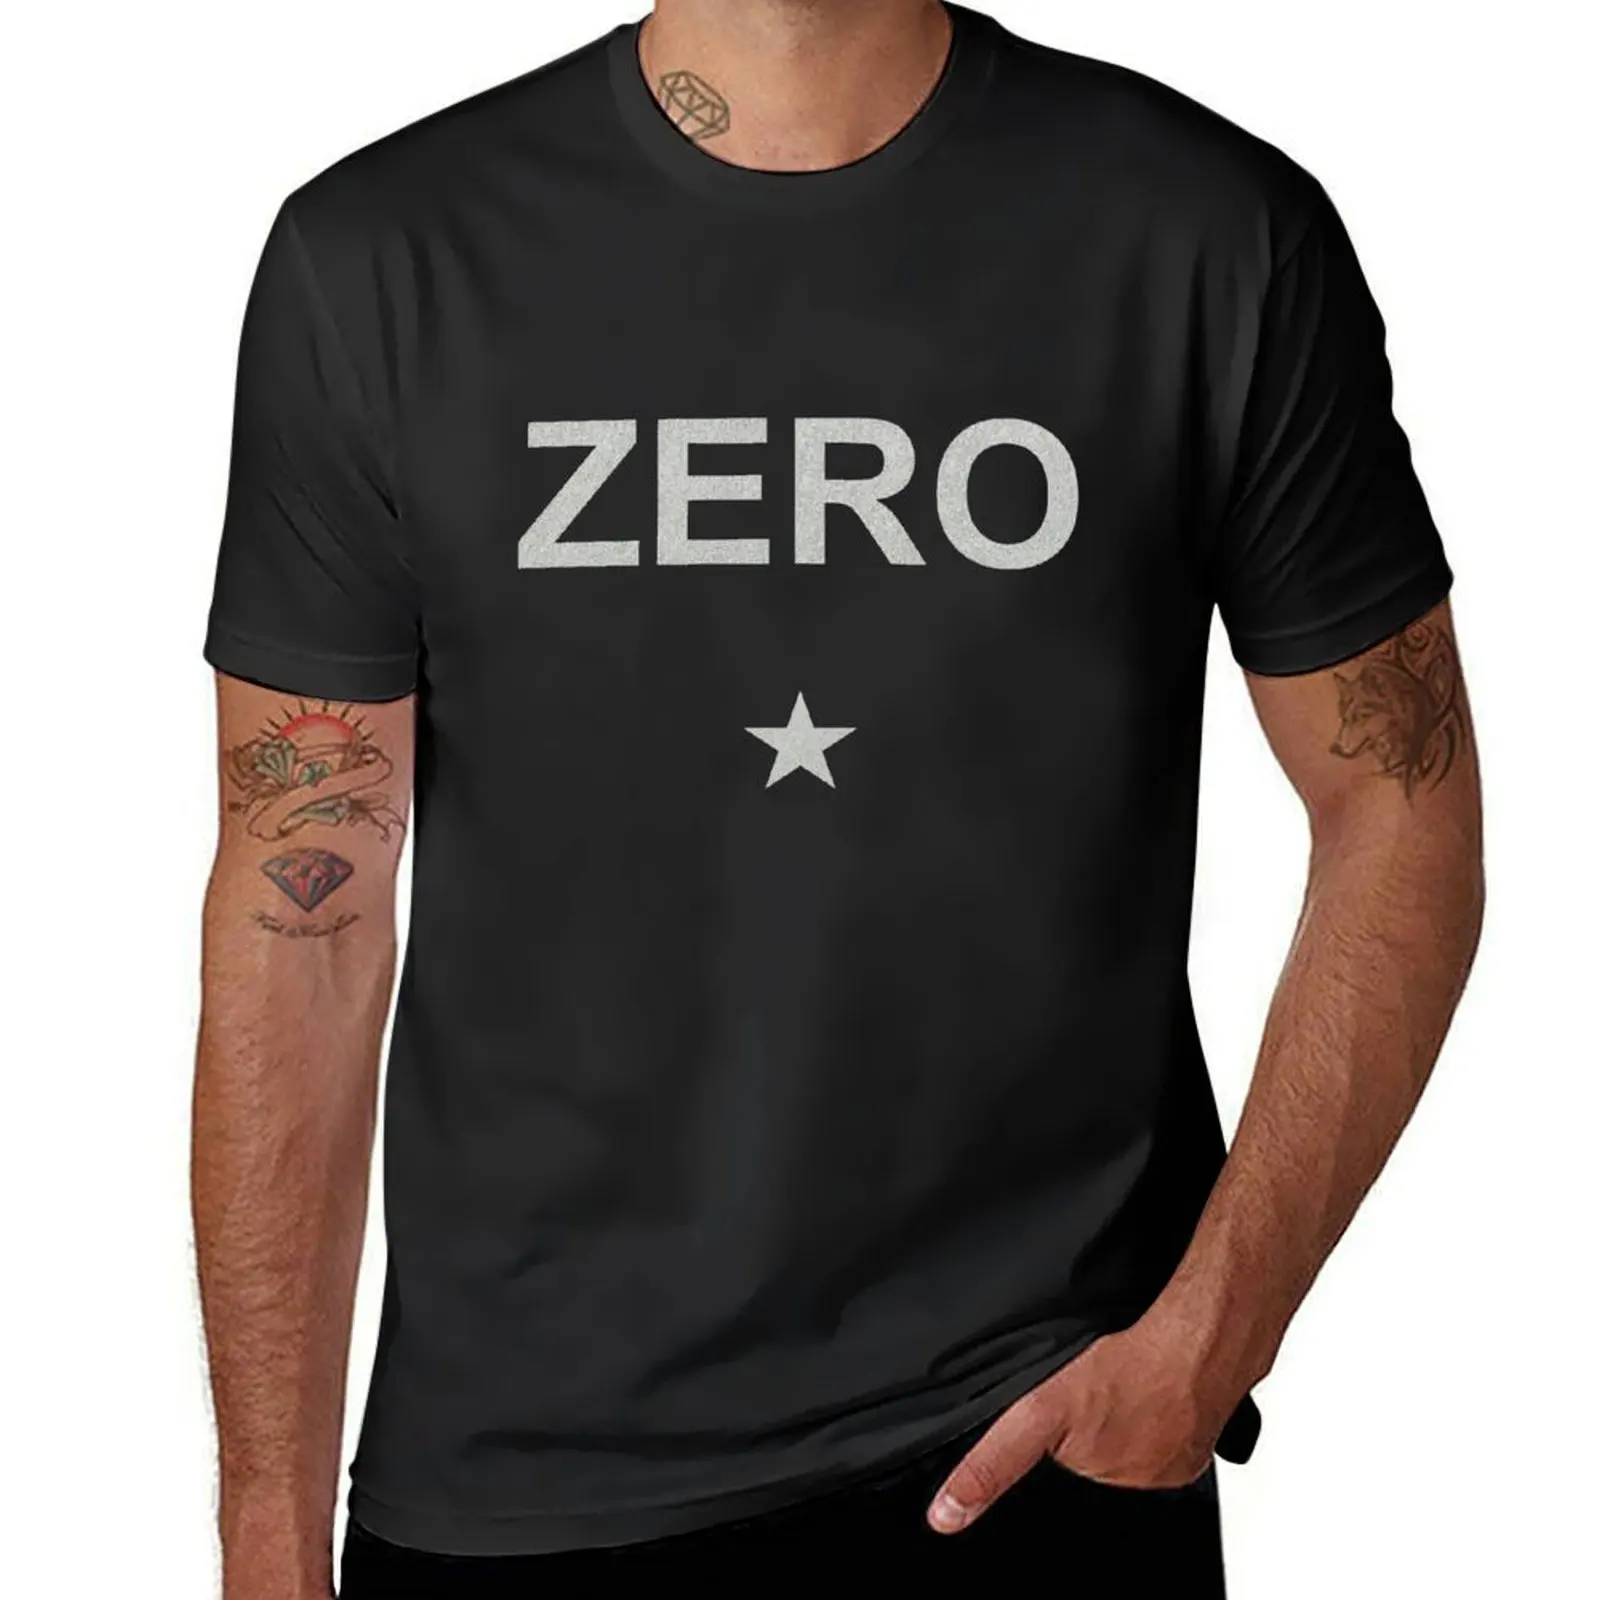 

Официальная футболка Smashing Pumpkins Zero, футболка на заказ, эстетическая одежда, новое издание, черные футболки для мужчин